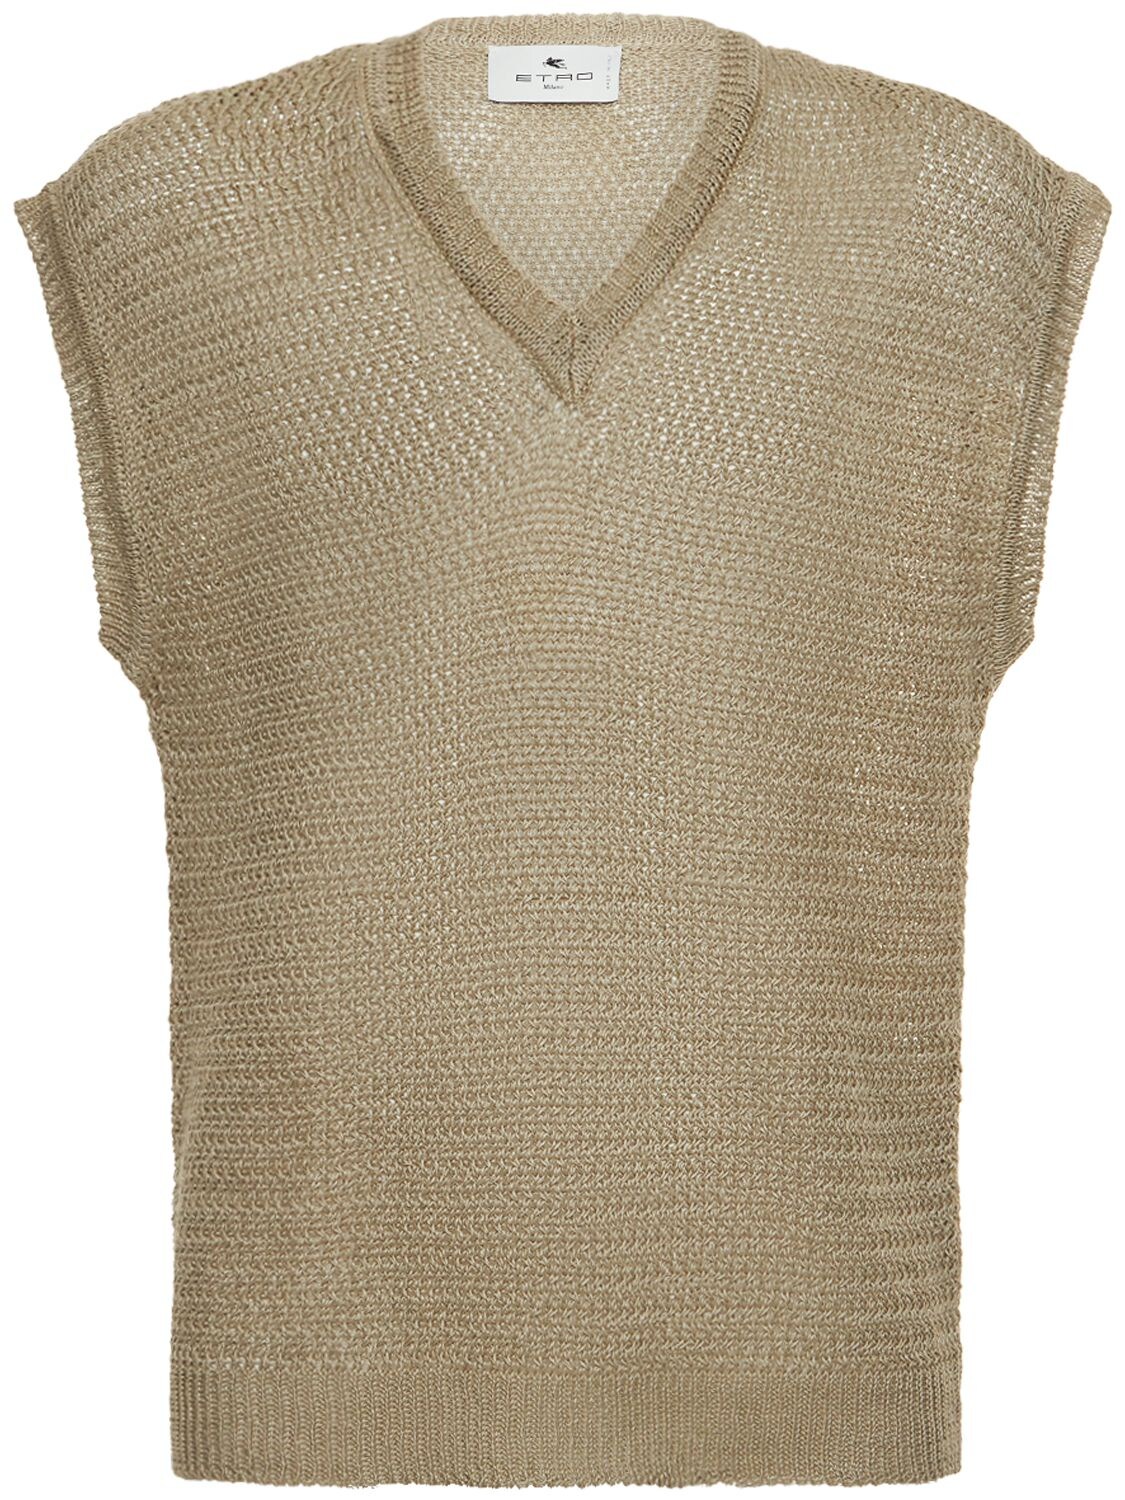 ETRO Linen Knit Vest